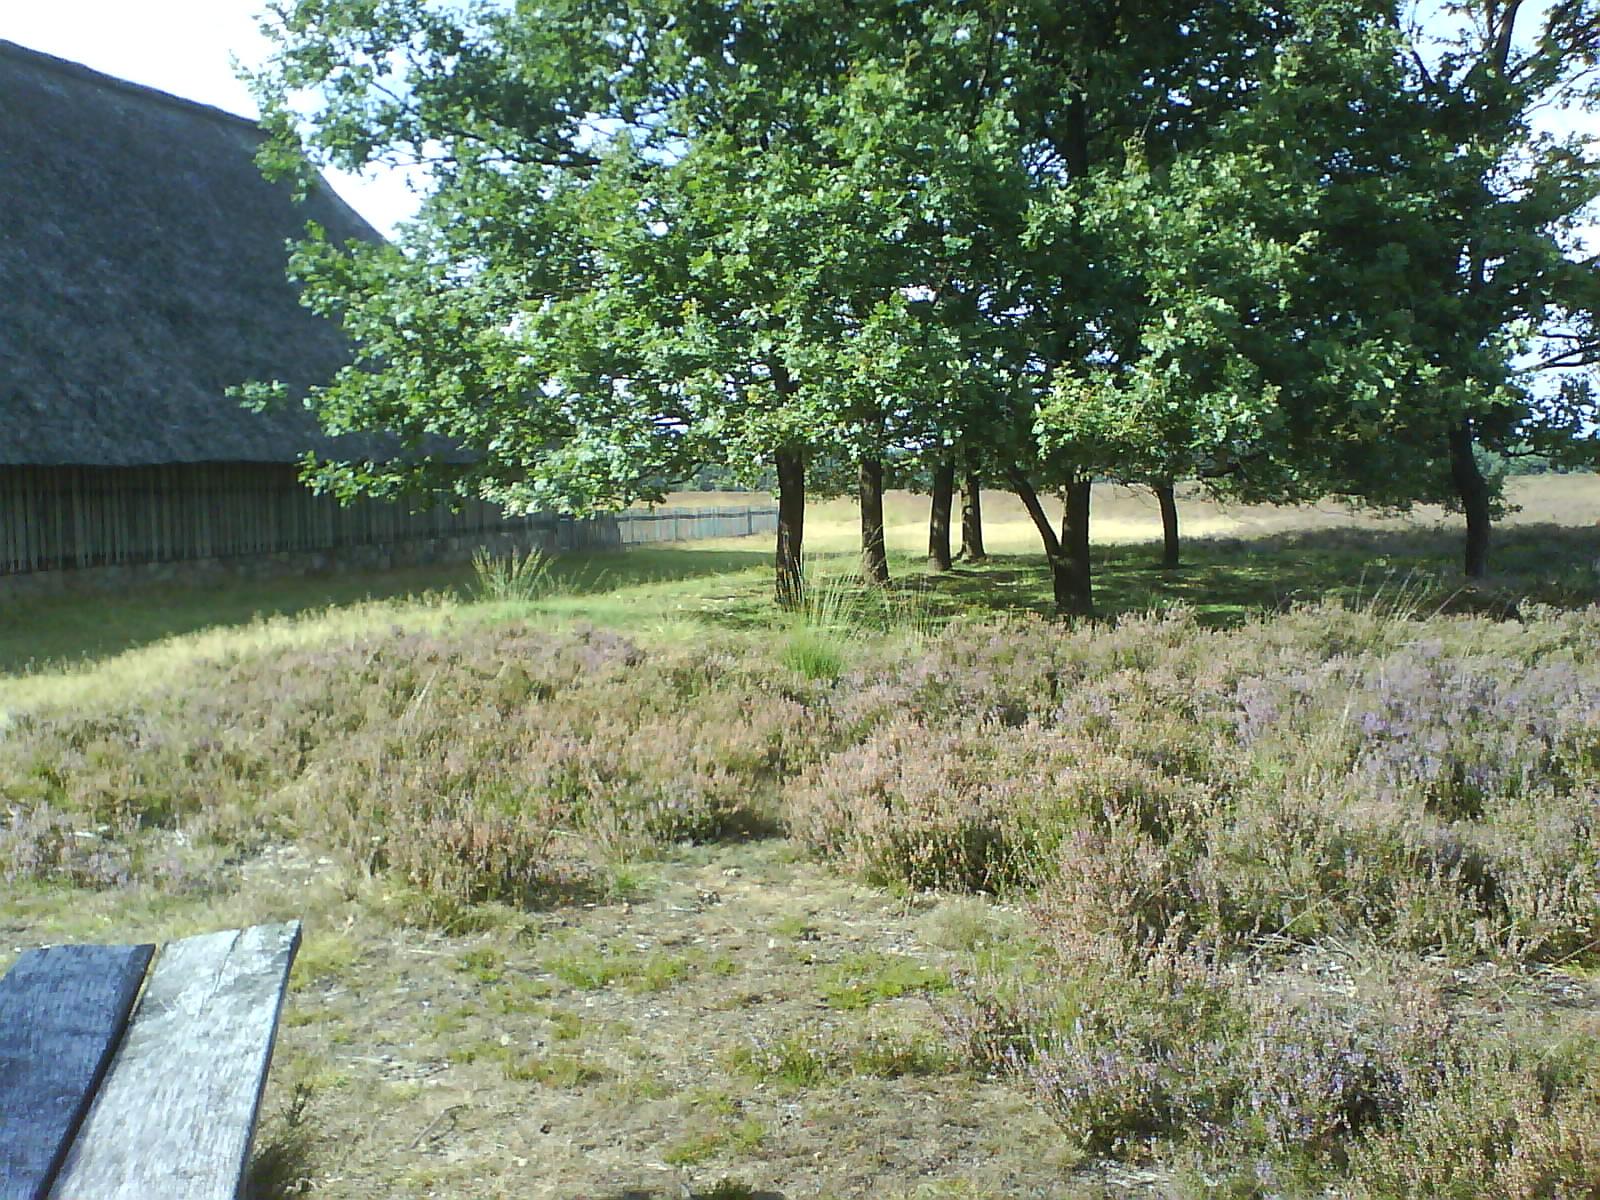 Pausenplatz am Schafstall in der Heide